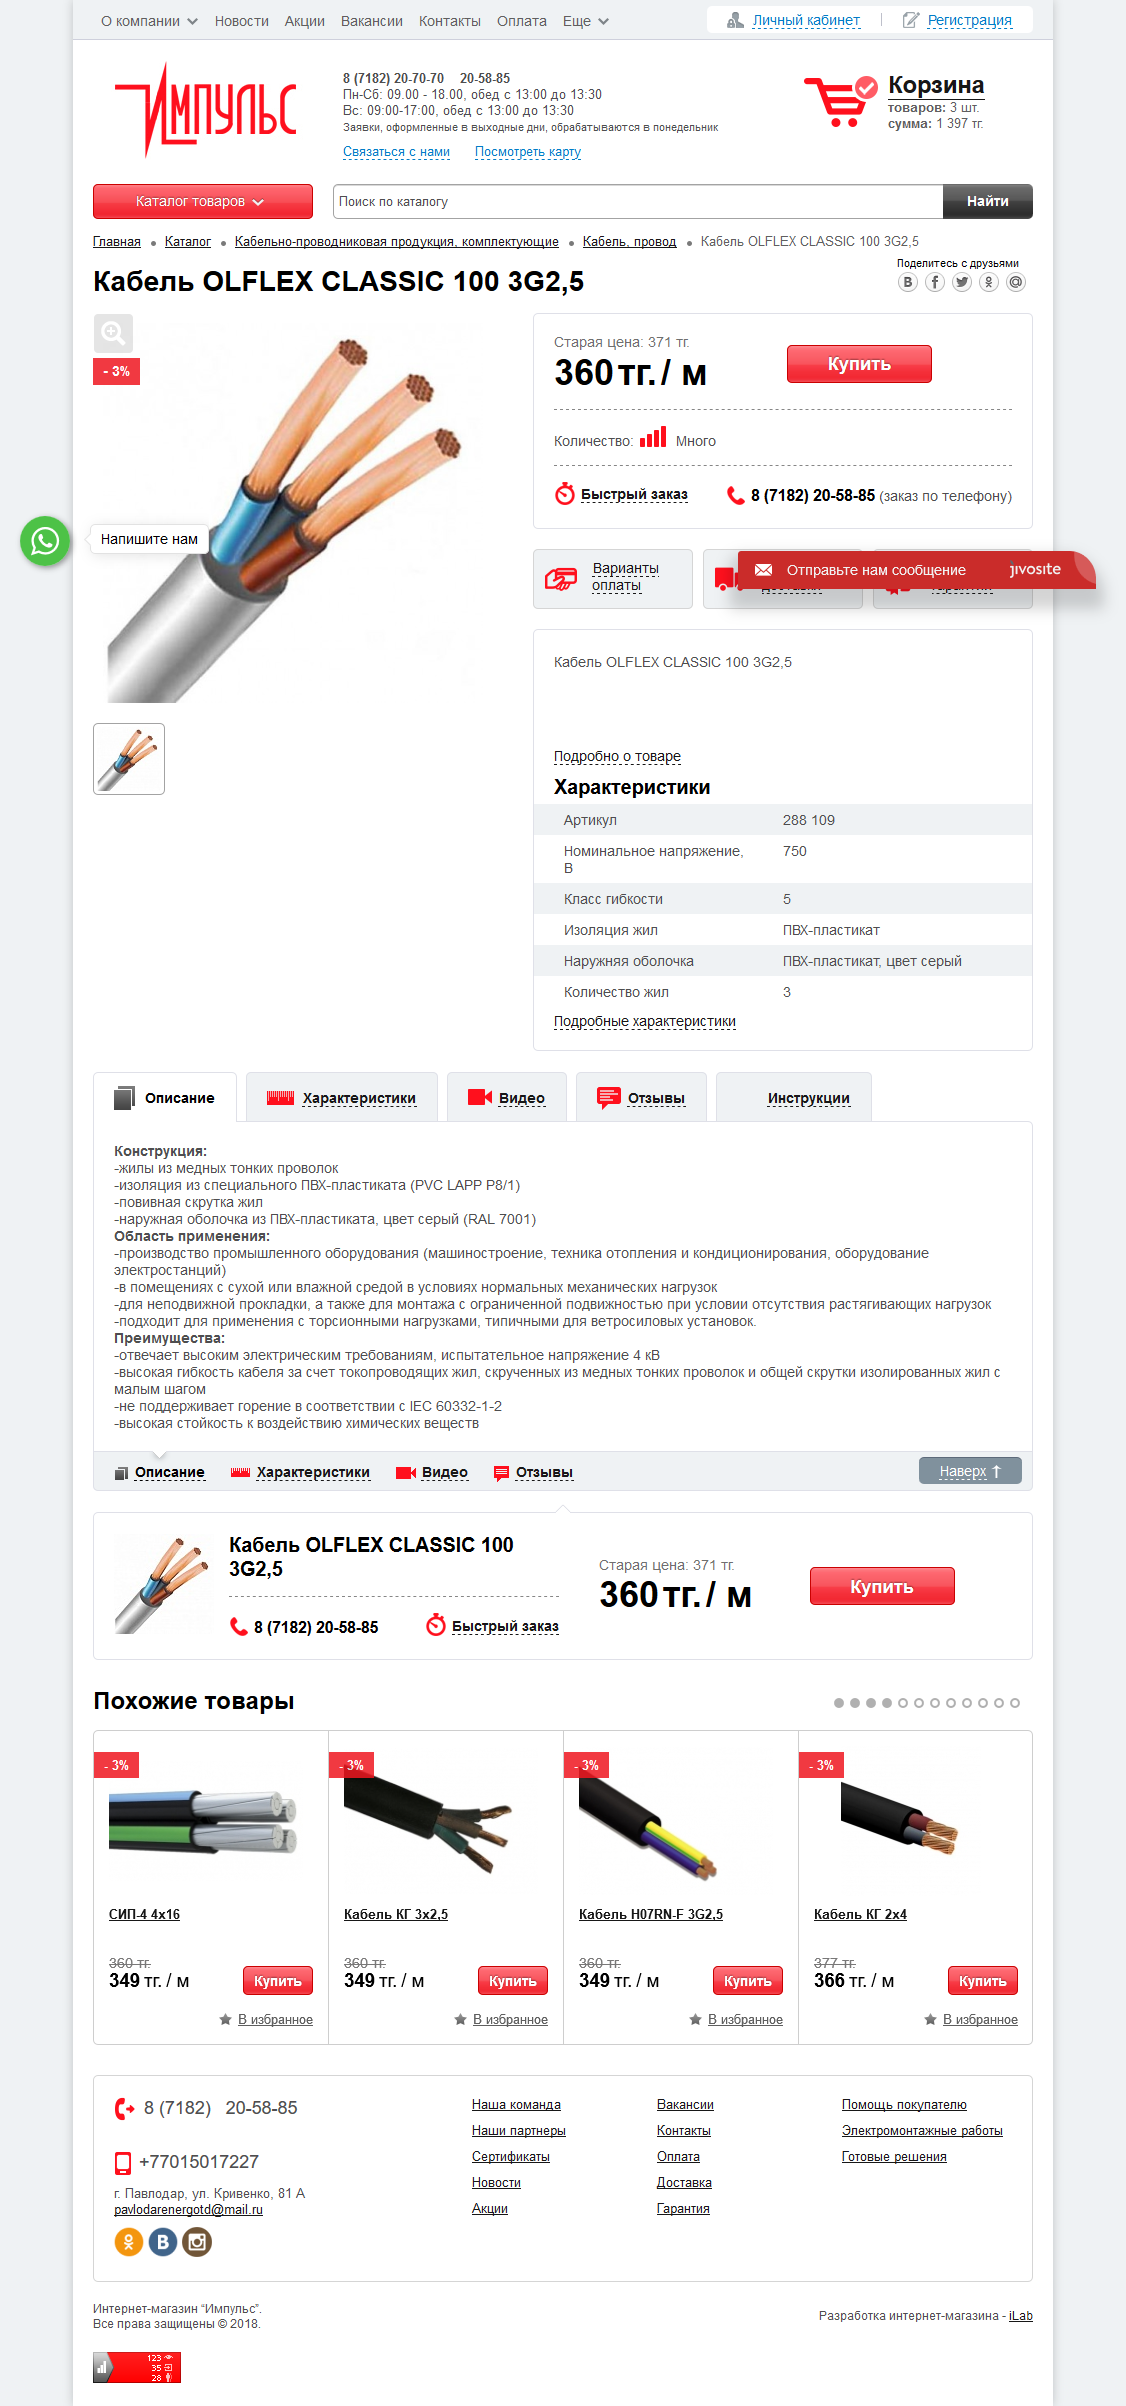 интернет-магазин электротехнической продукции impulstd.kz